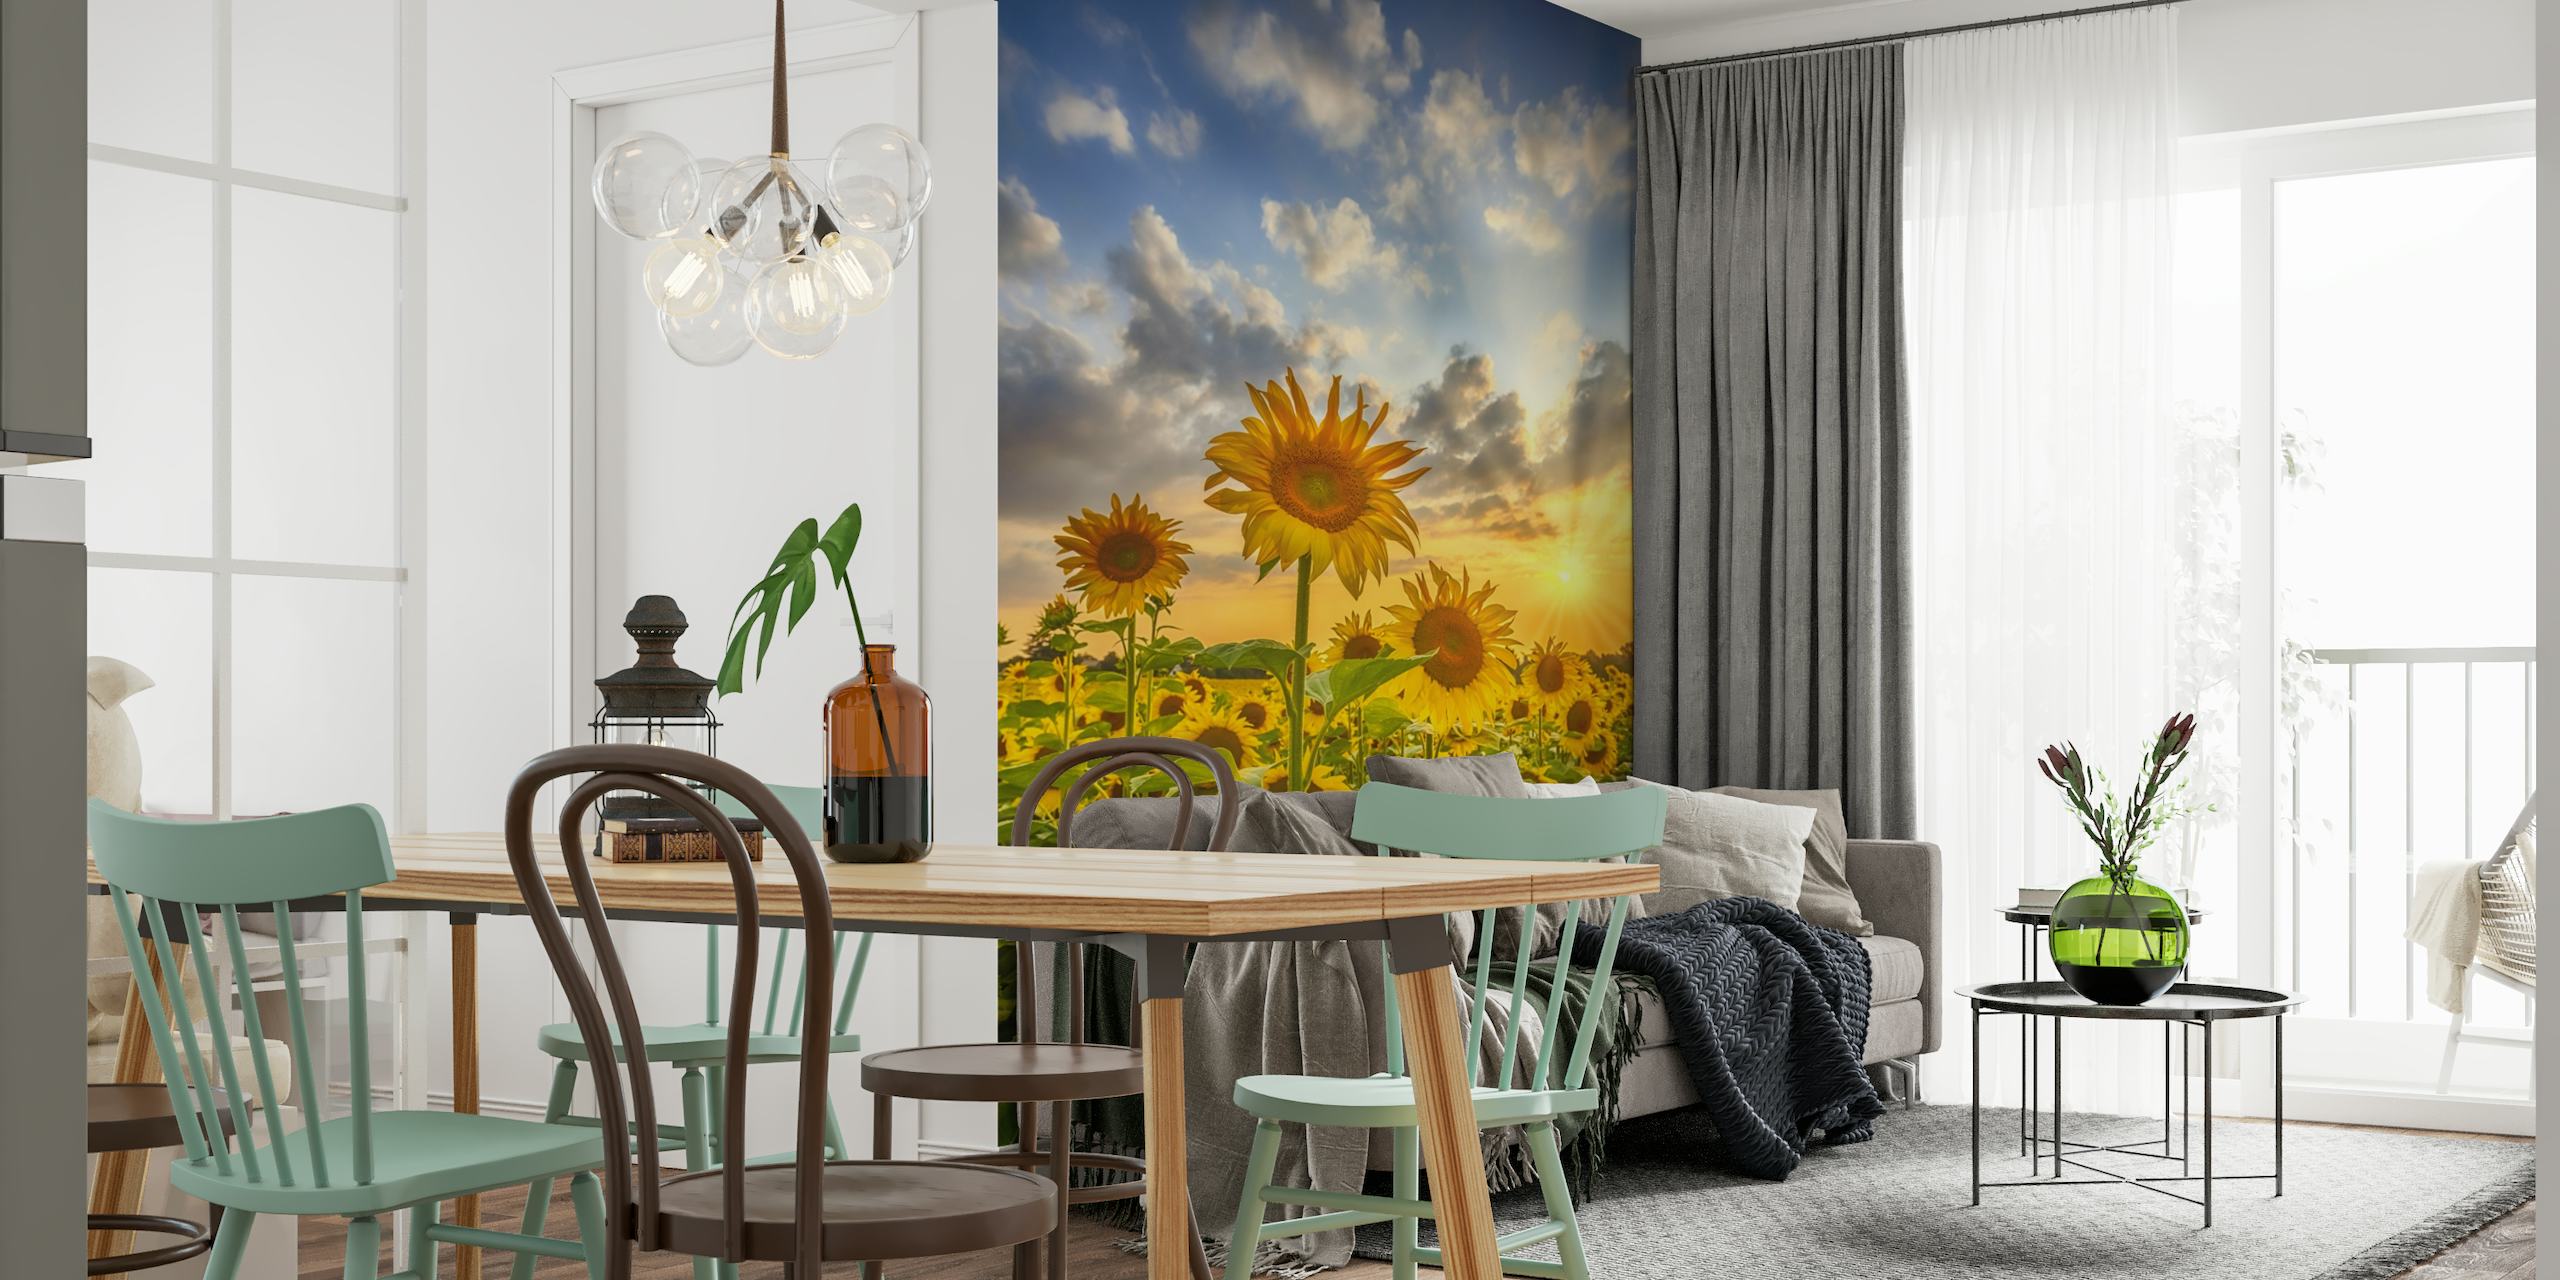 Lovely sunflowers in sunset wallpaper